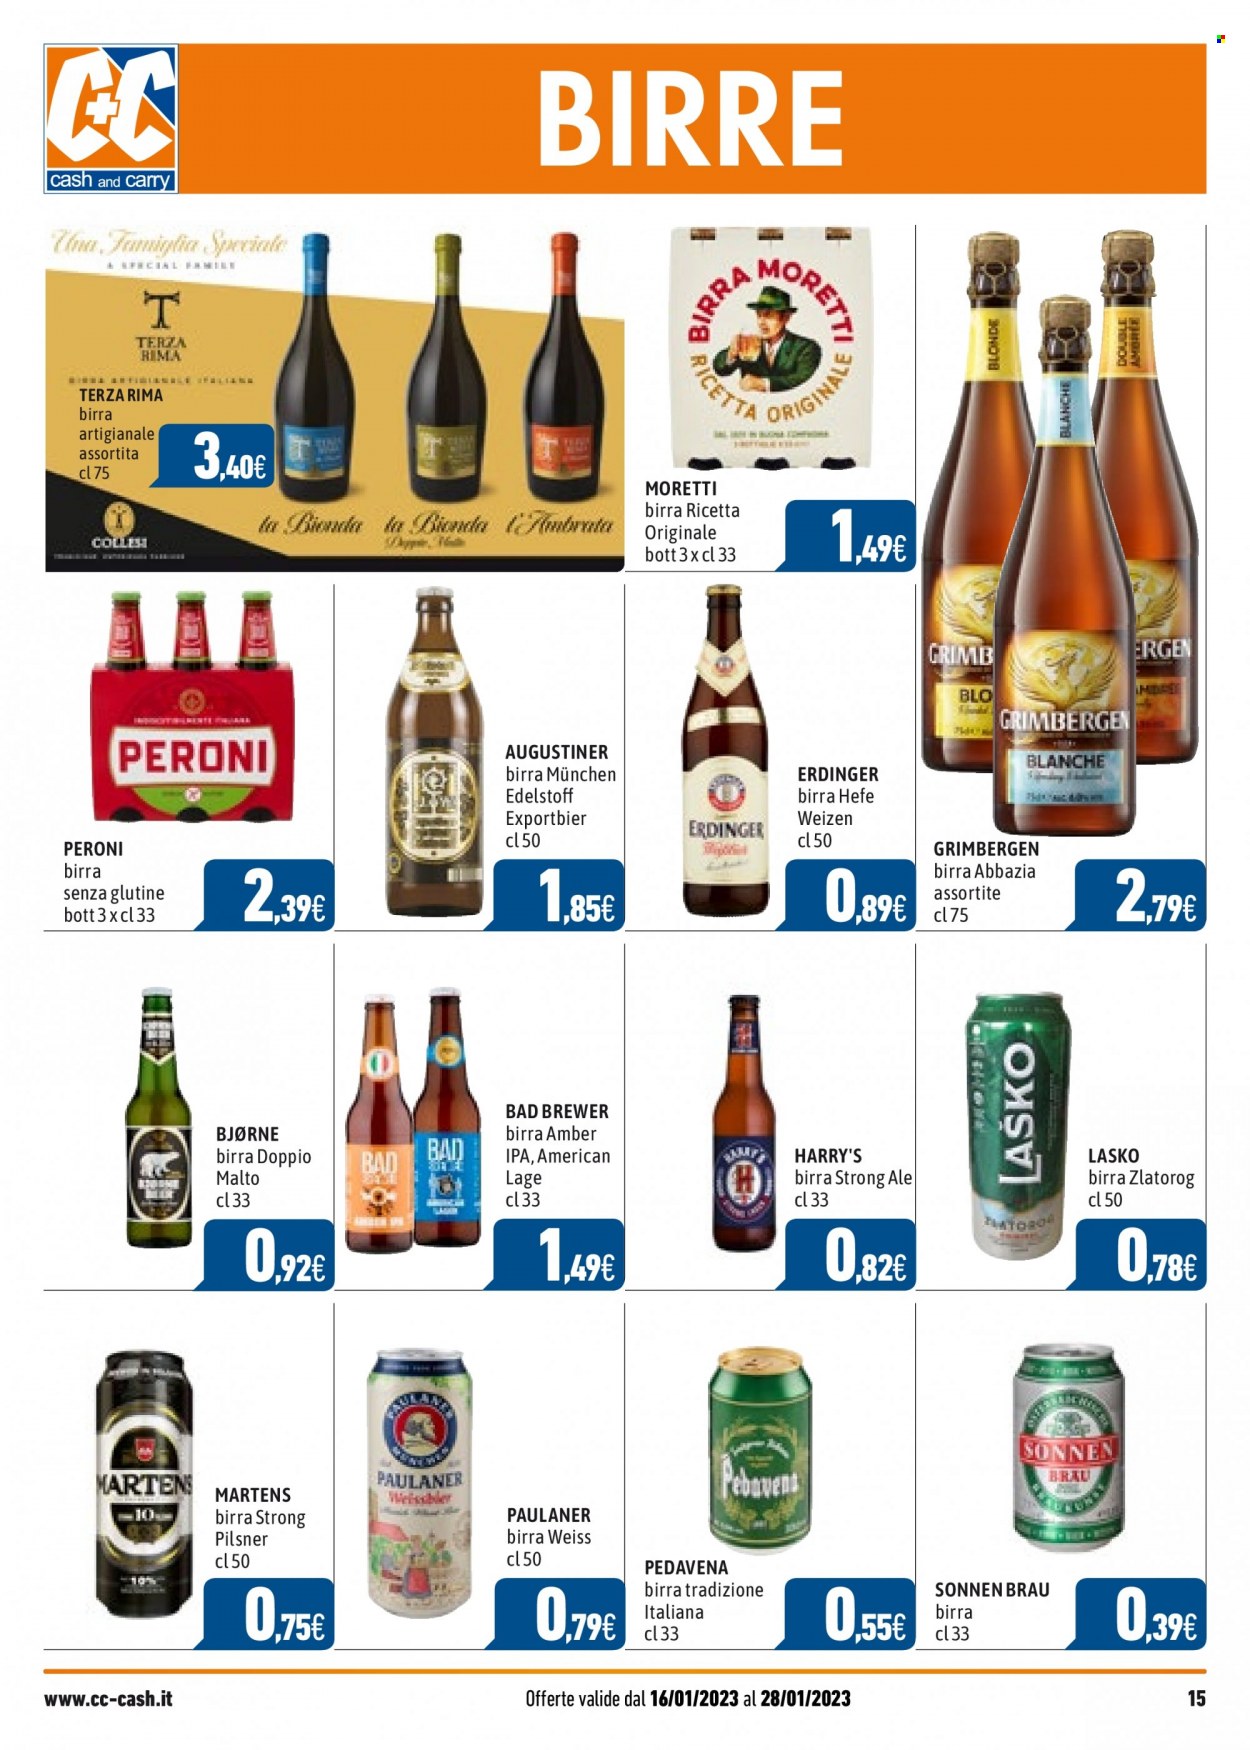 thumbnail - Volantino C+C Cash & Carry - 16/1/2023 - 28/1/2023 - Prodotti in offerta - Birra Moretti, Peroni, birra, birra tipo IPA, birra di frumento, Paulaner, birra tipo pilsner, birra senza glutine. Pagina 15.